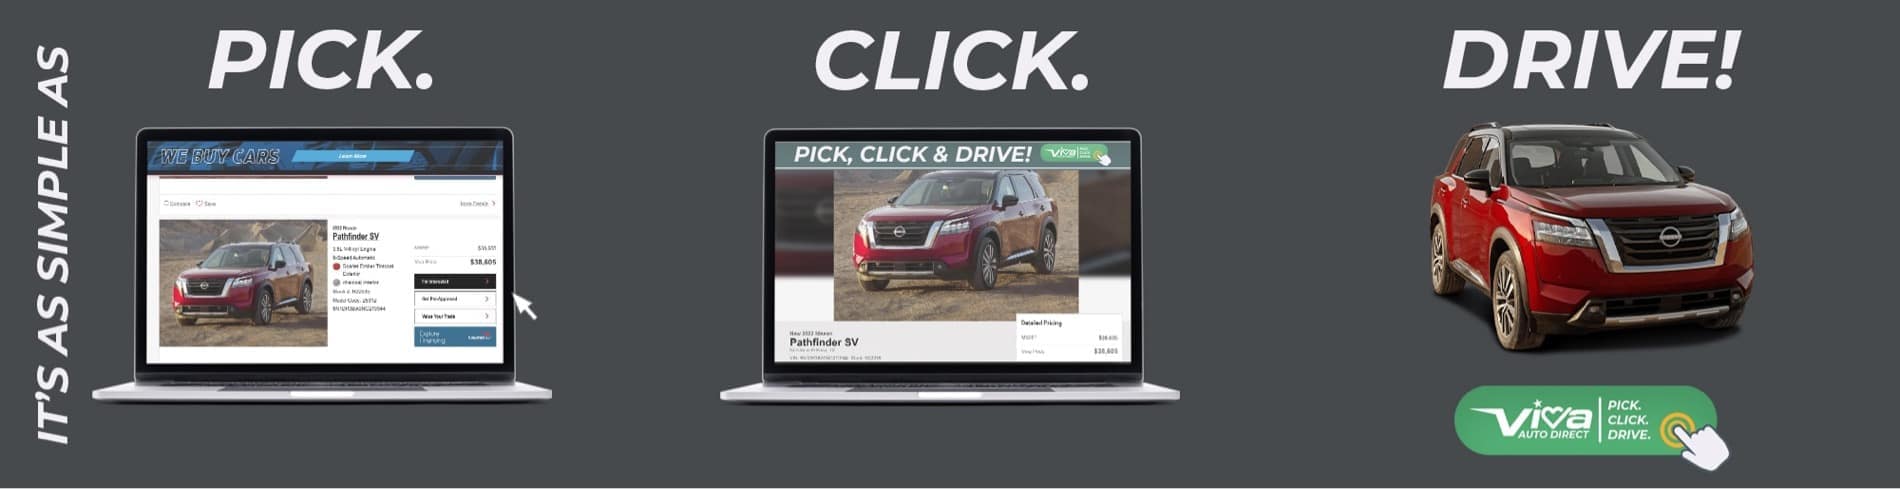 pick click drive